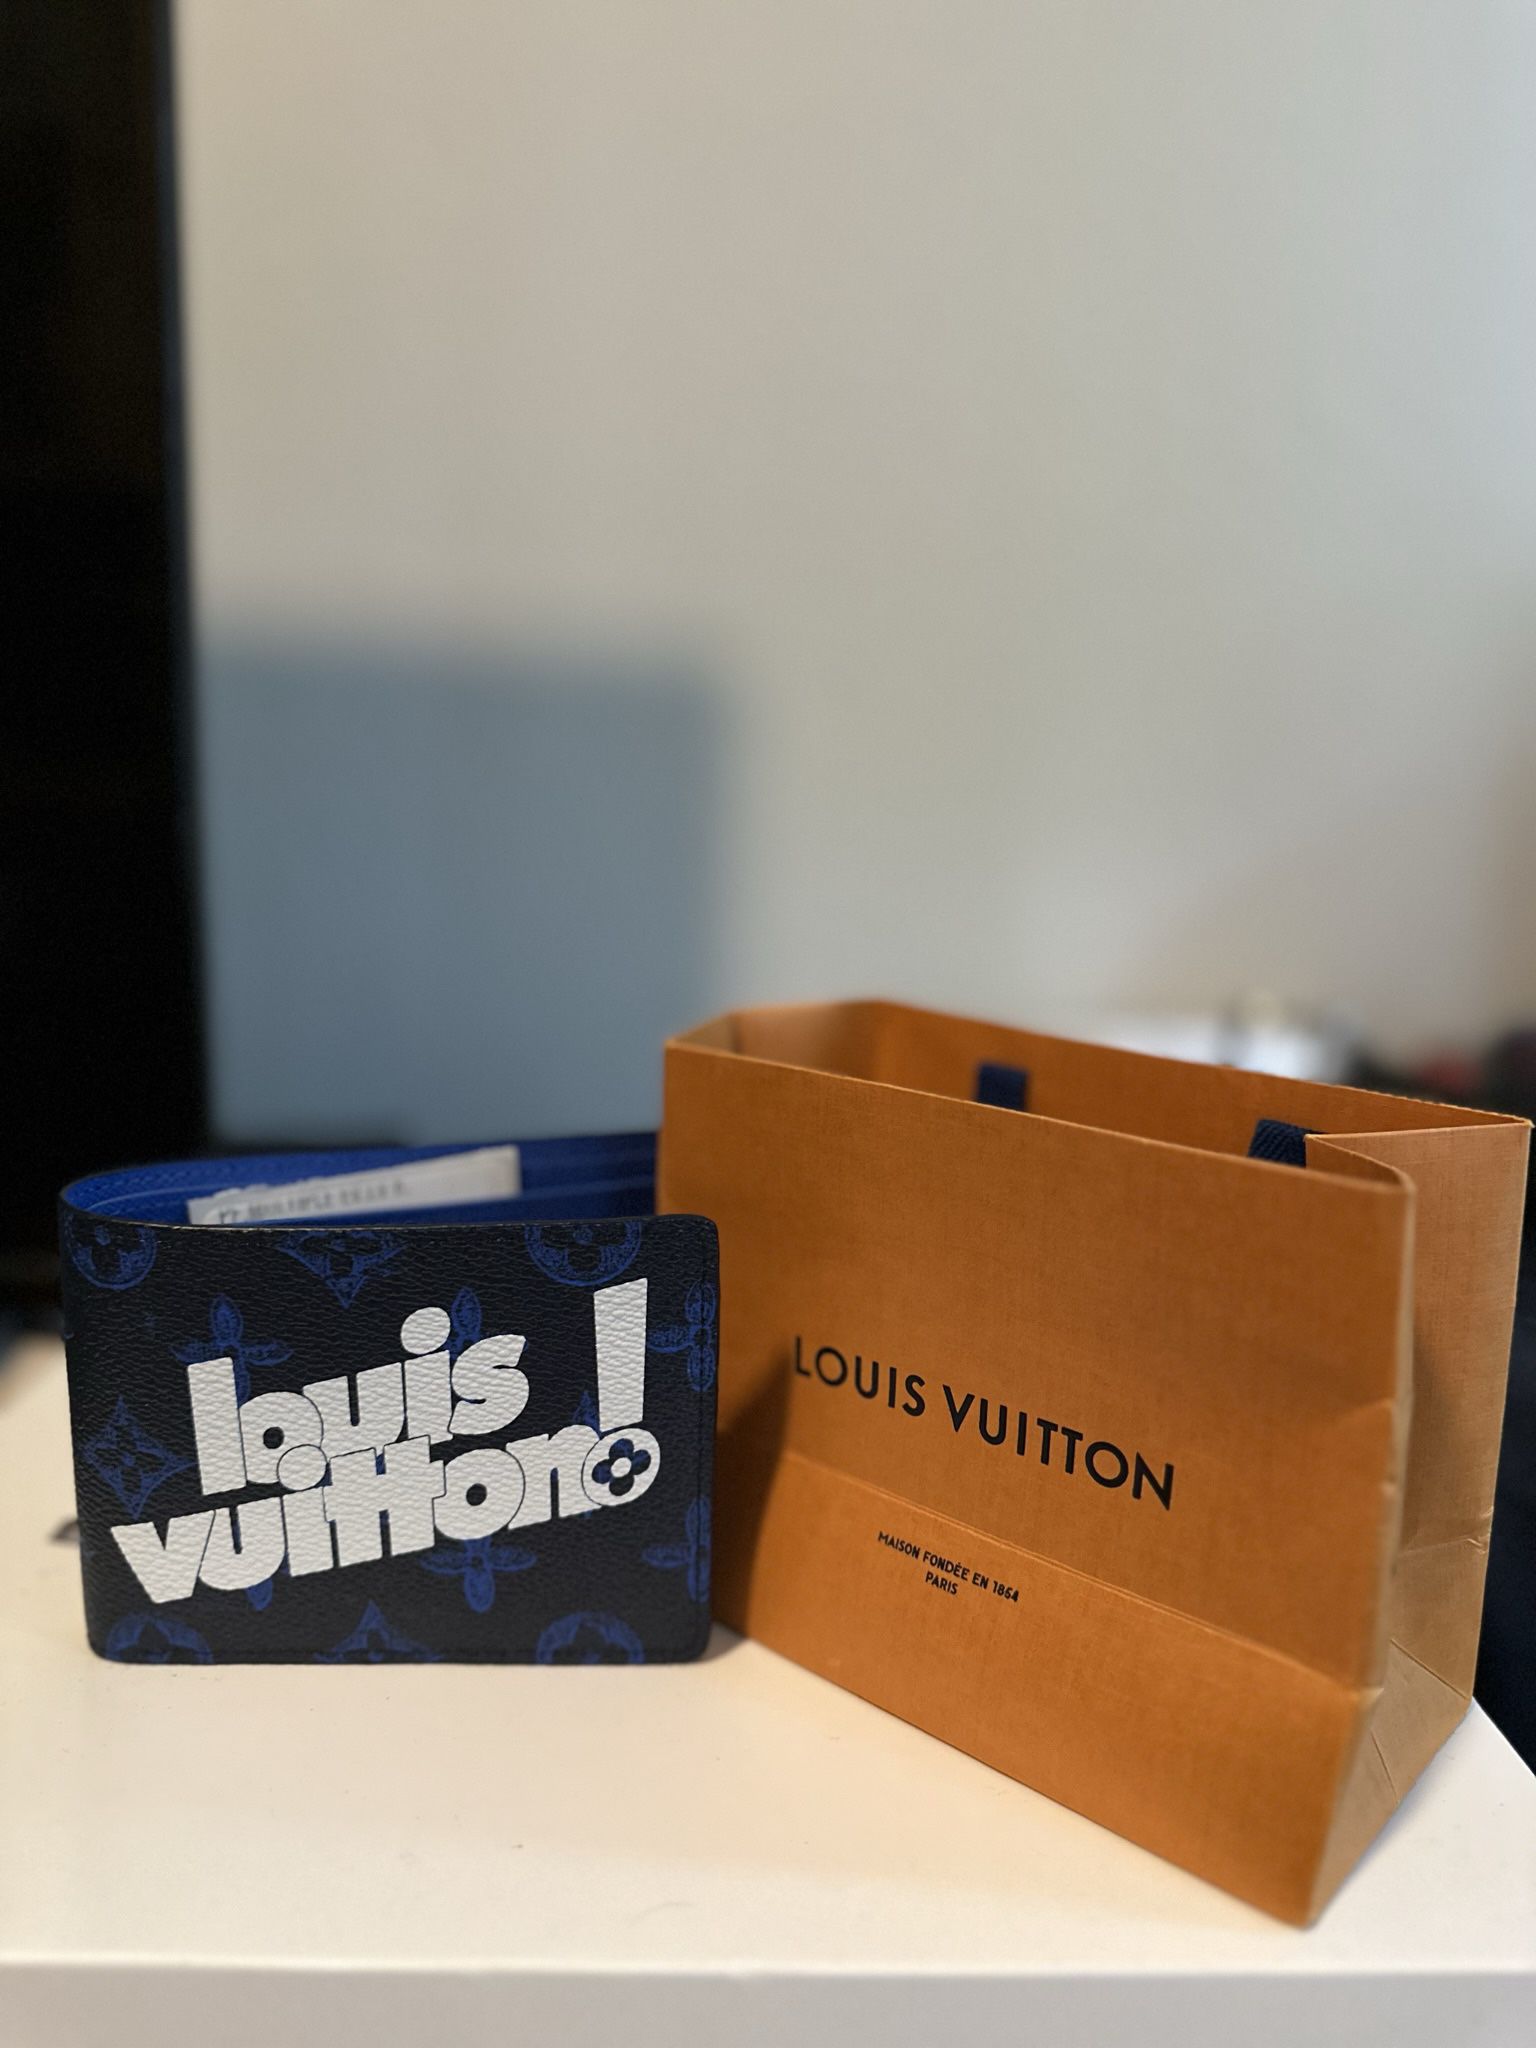 Louis Vuitton Men's “Multiple Wallet” for Sale in Cranston, RI - OfferUp